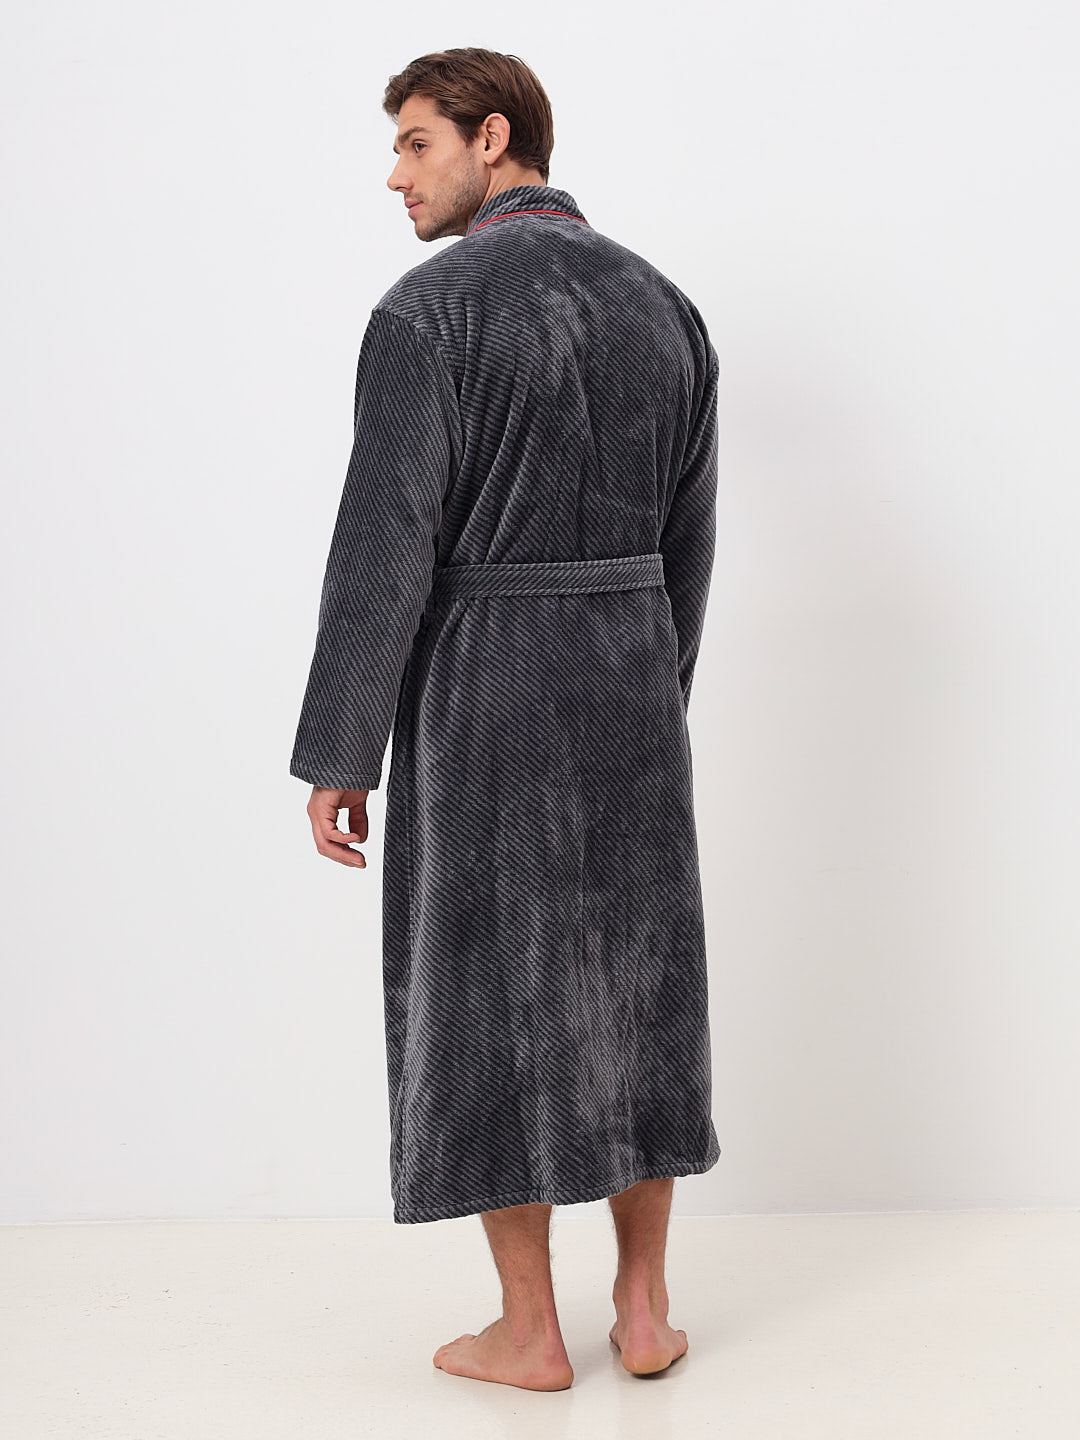 IN ÜBERGRÖSSEN ERHÄLTLICH - Herren Kimono Bademantel aus 100% Baumwolle in melange Diagonel Stripe Design LMS-6471 Anthrazit